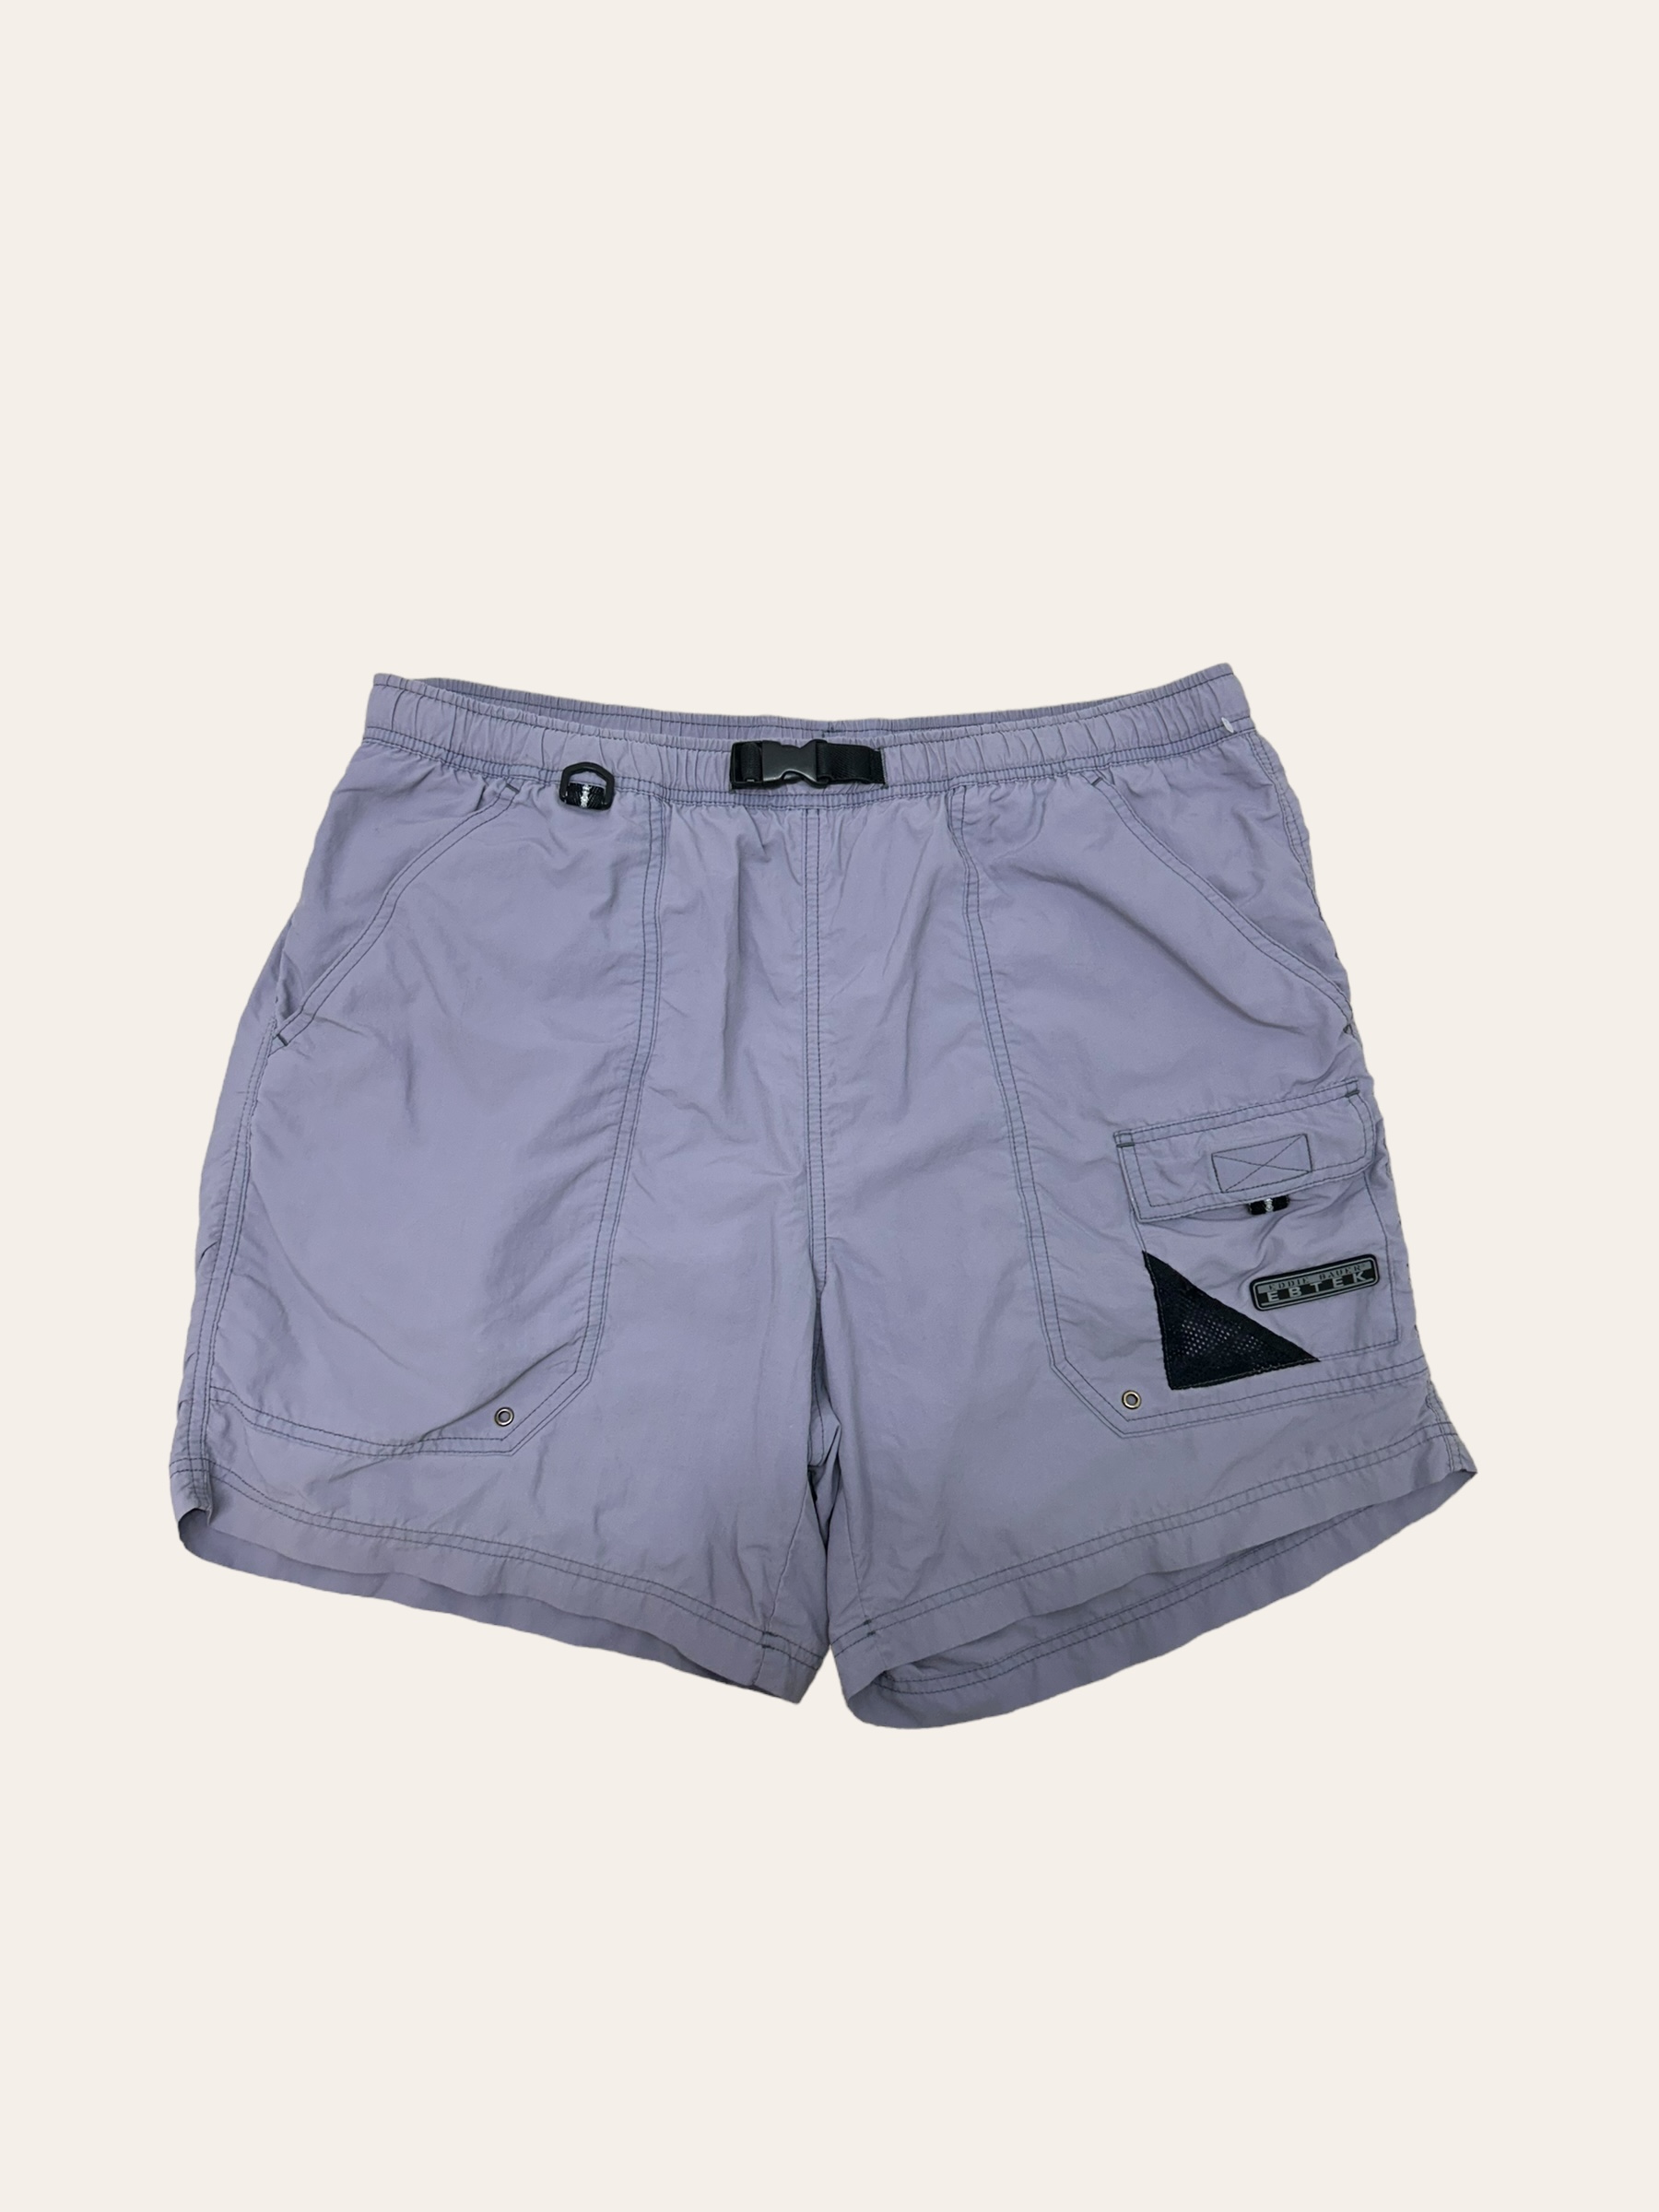 Eddie bauer EBTEK purple gray color nylon shorts L